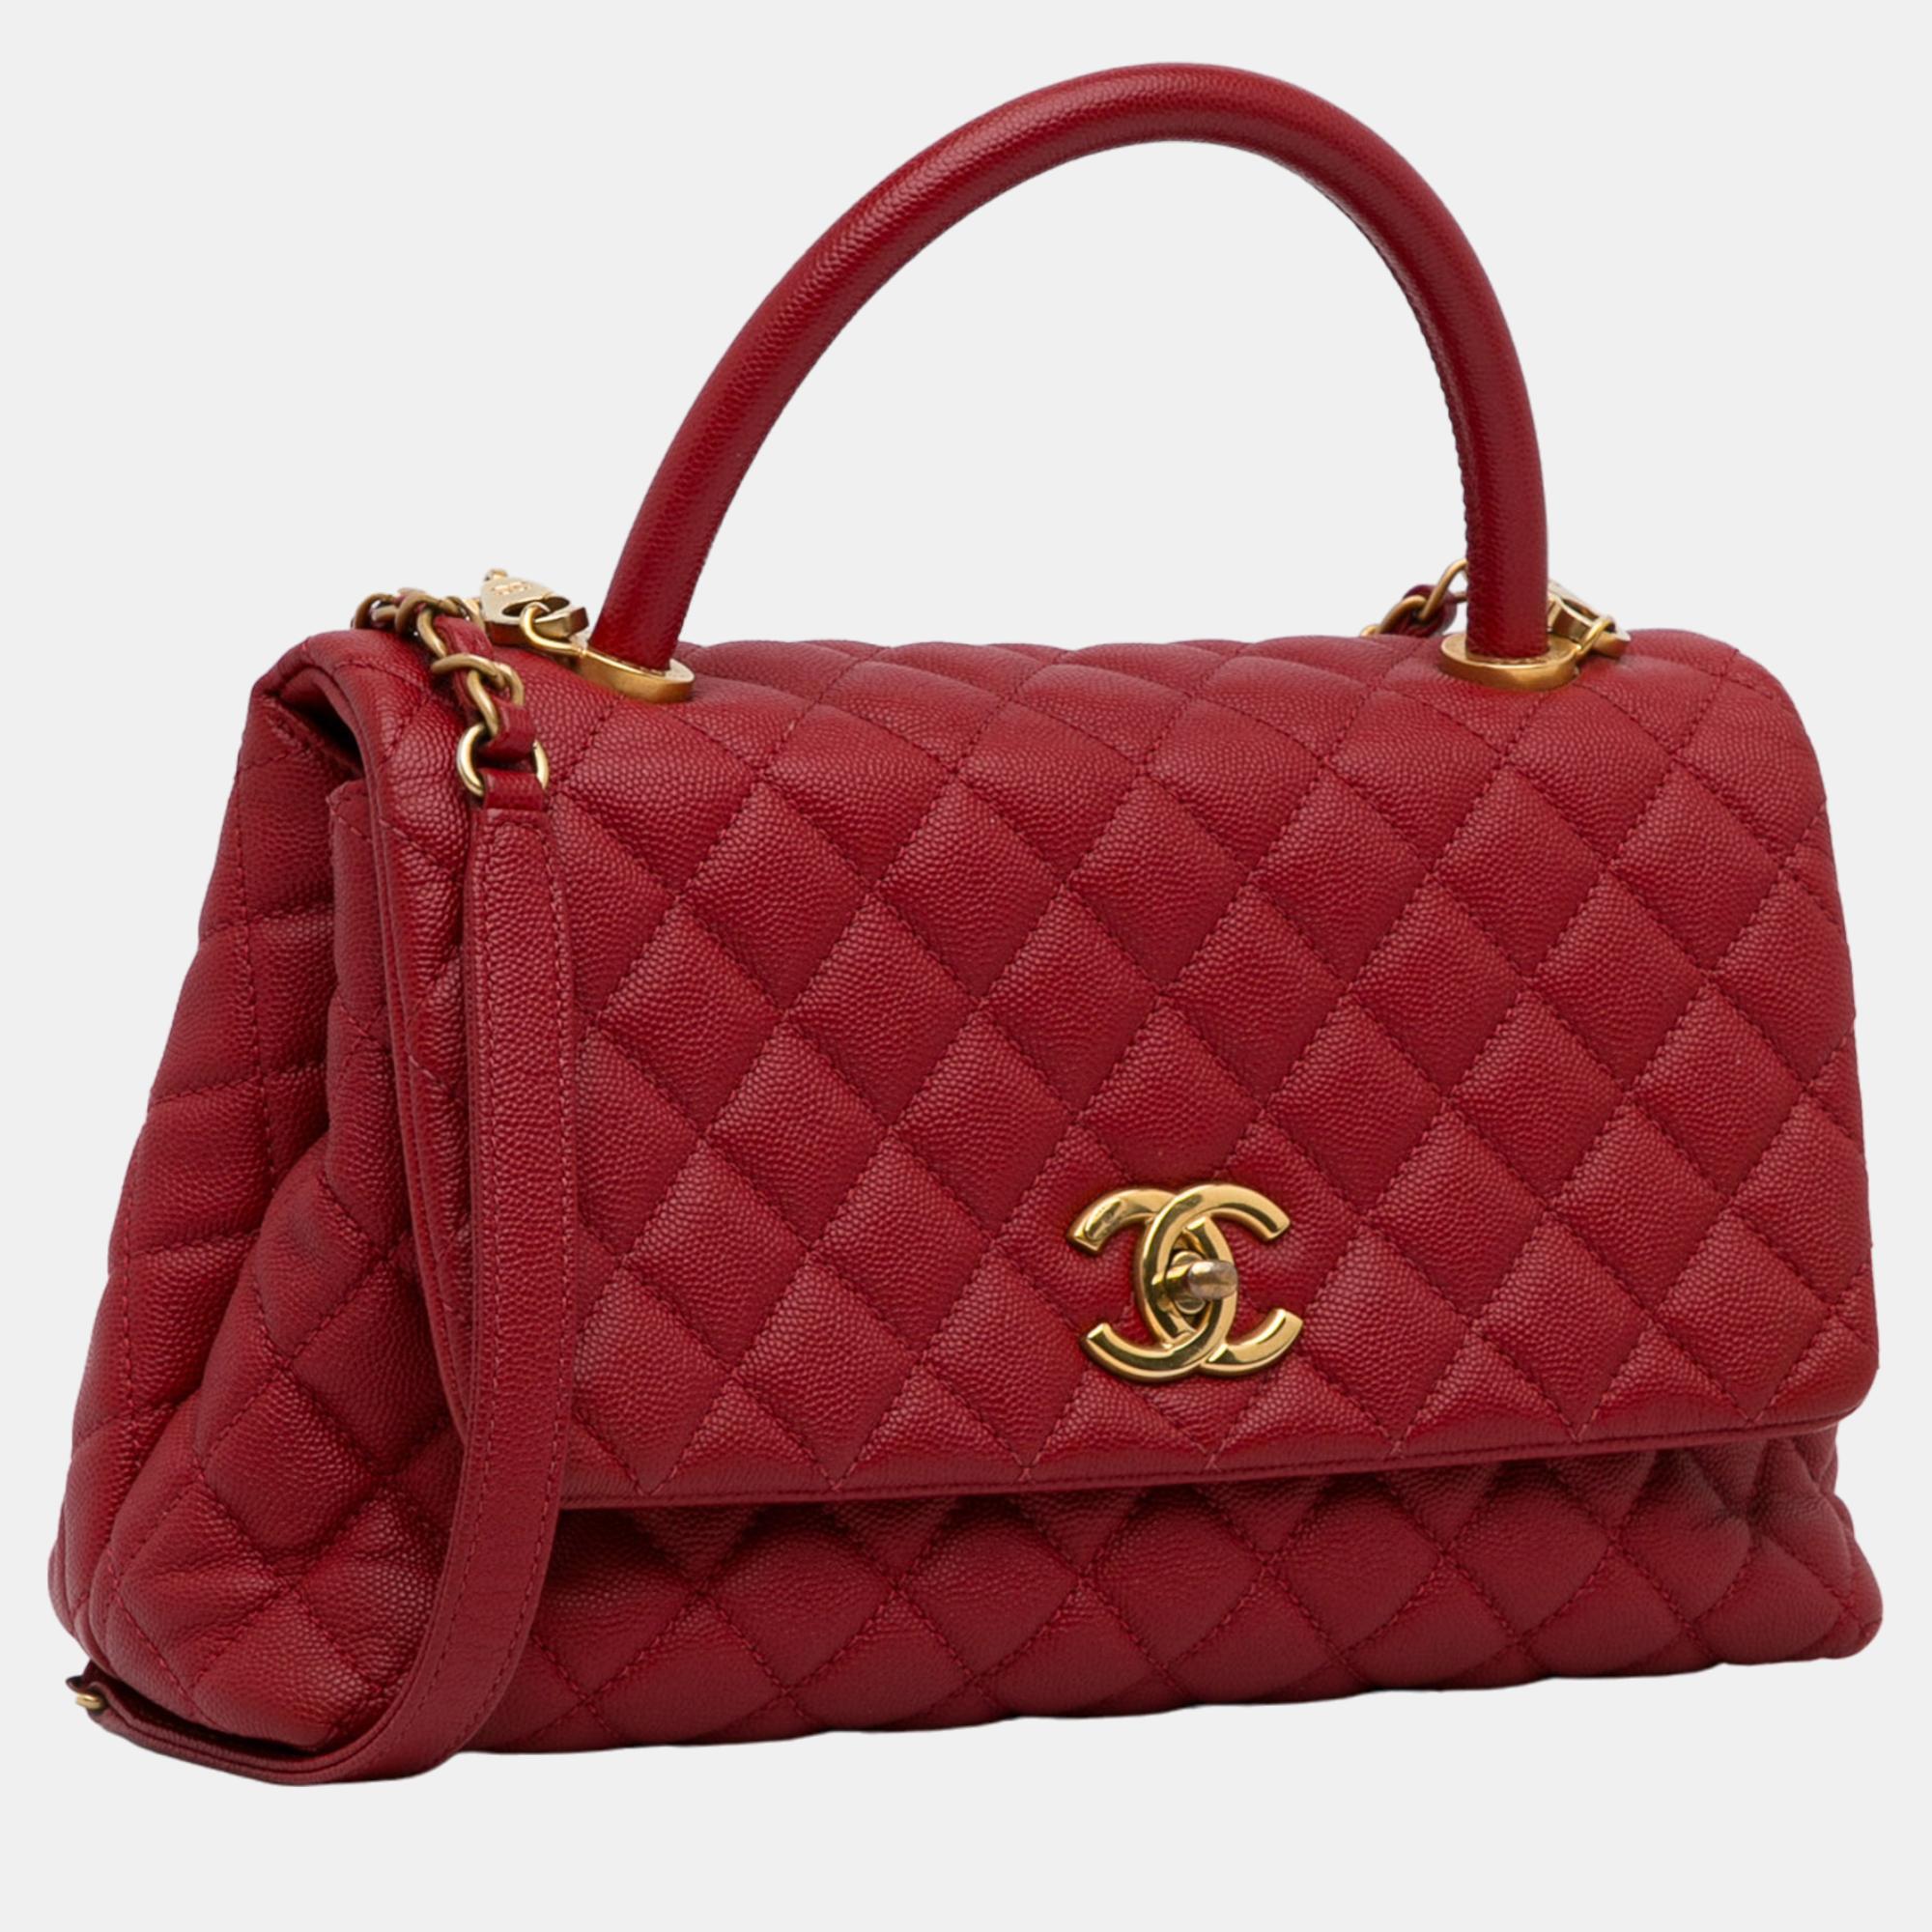 

Chanel Red Medium Caviar Coco Handle Bag